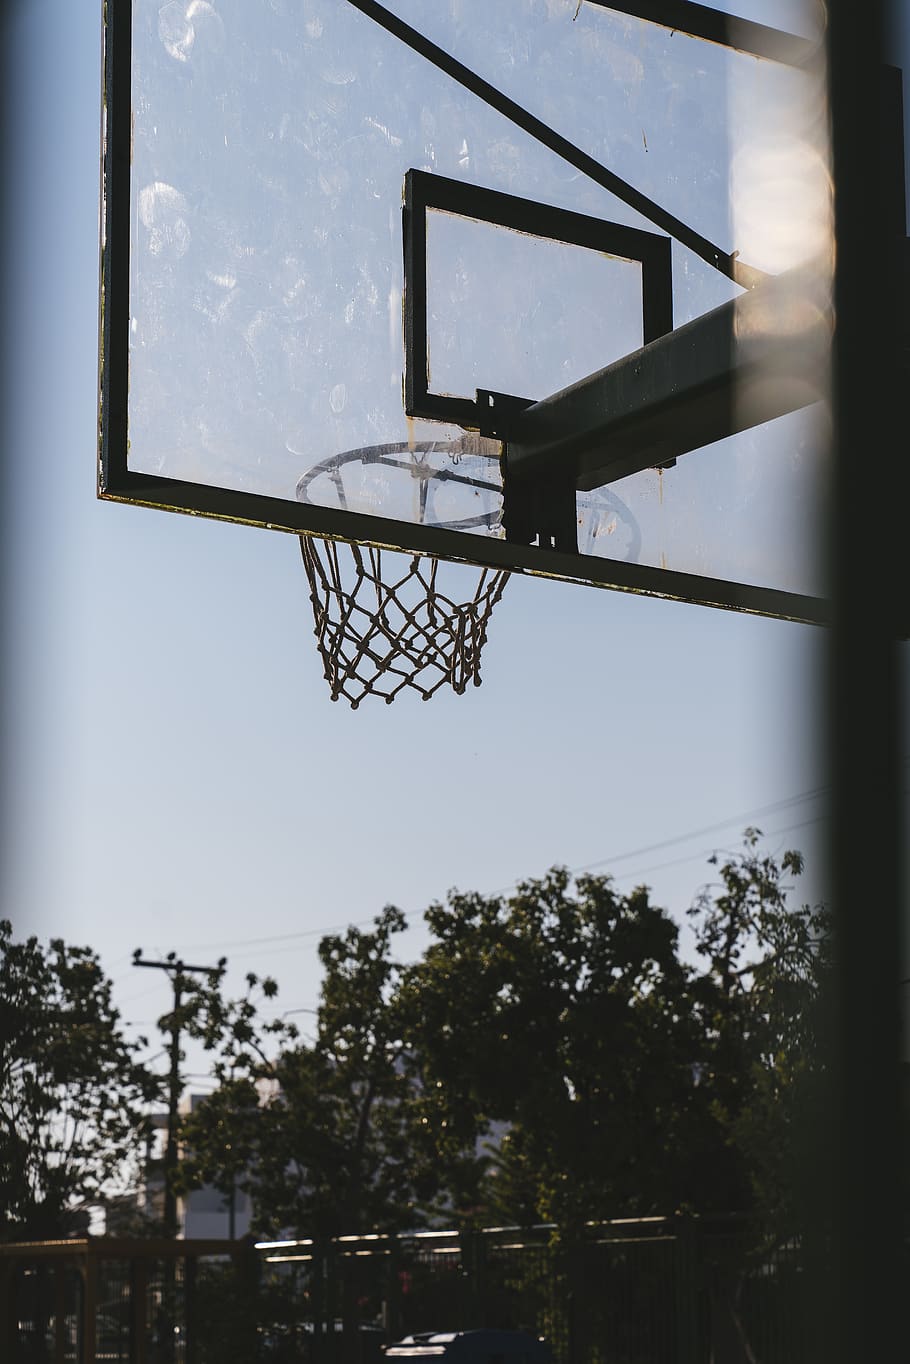 basketball hoop, bball, court, team sport, sports, basketball court